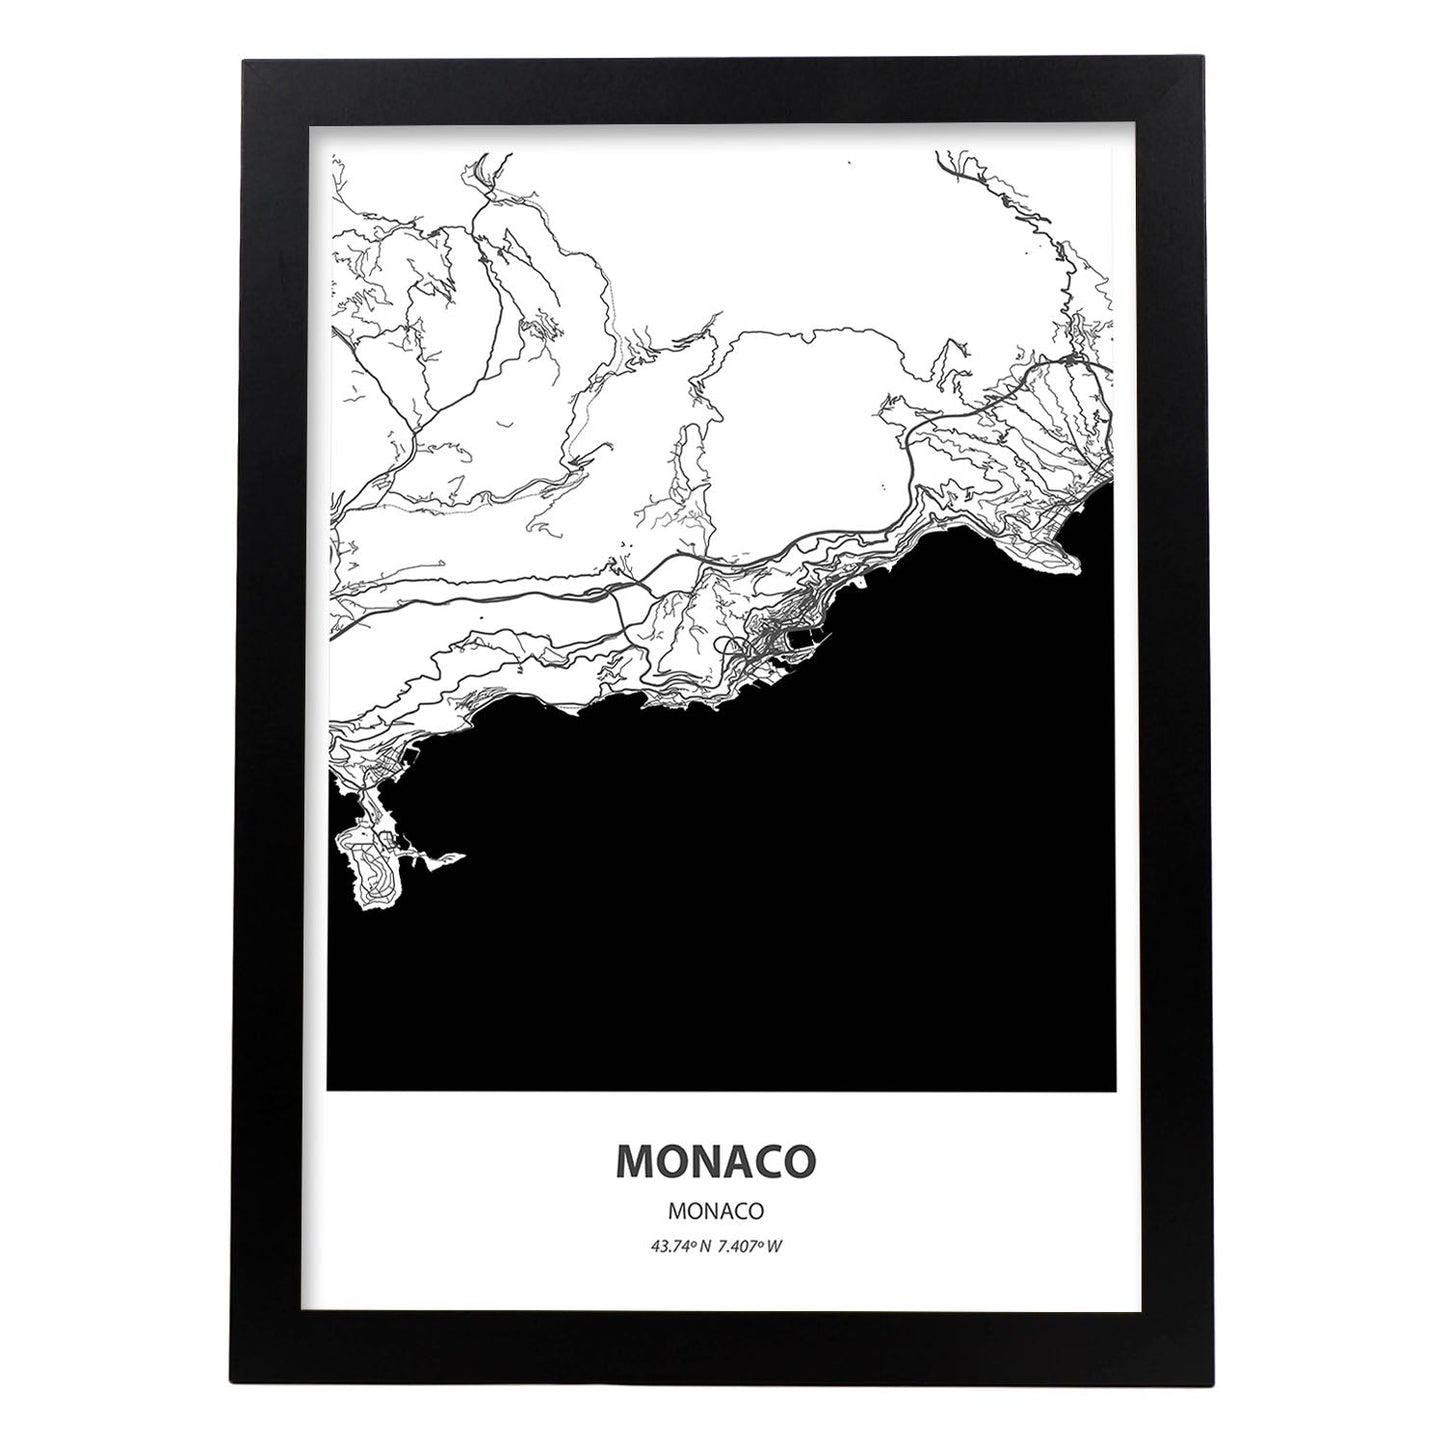 Poster con mapa de Monaco - Monaco. Láminas de ciudades de Europa con mares y ríos en color negro.-Artwork-Nacnic-A3-Marco Negro-Nacnic Estudio SL